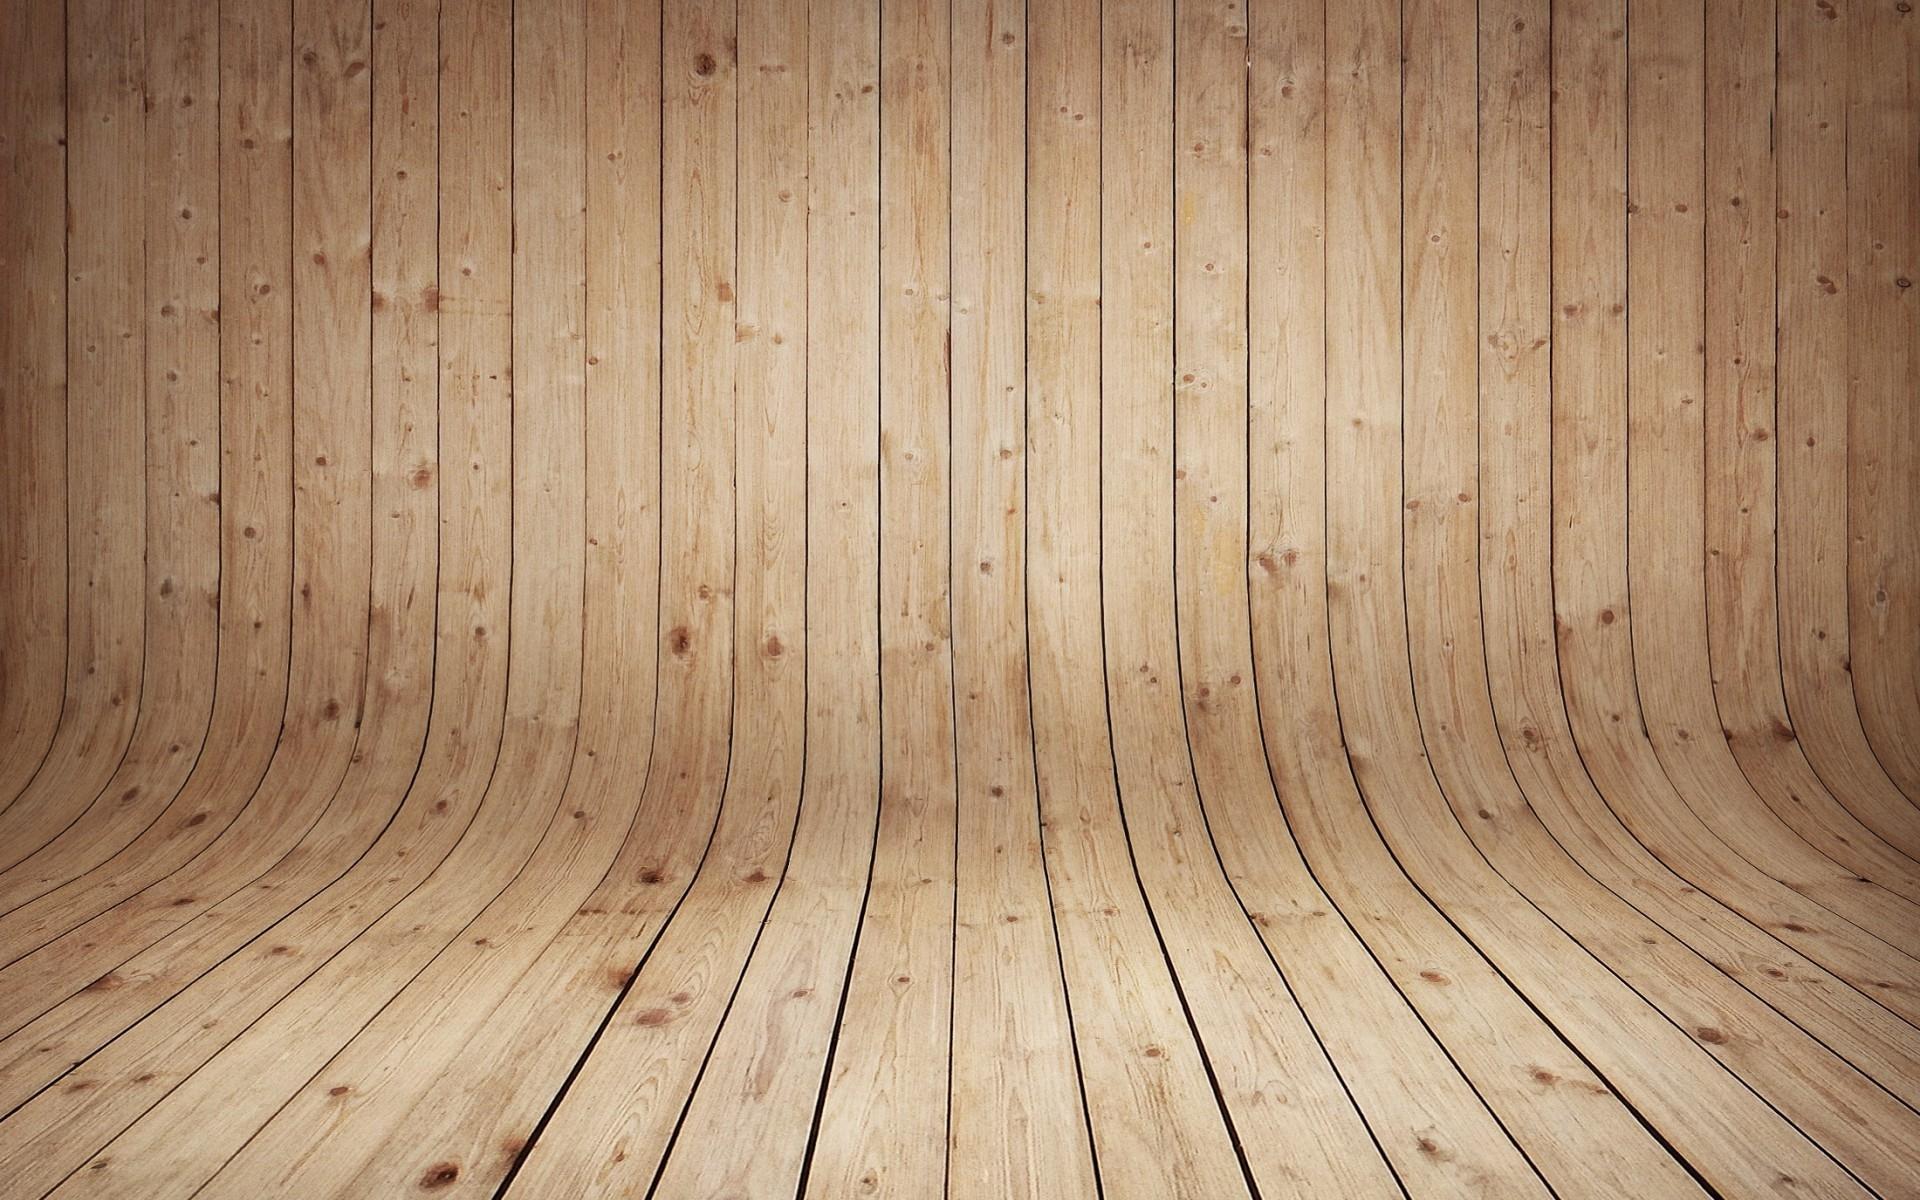 Wood Like Wallpaper. Desktop